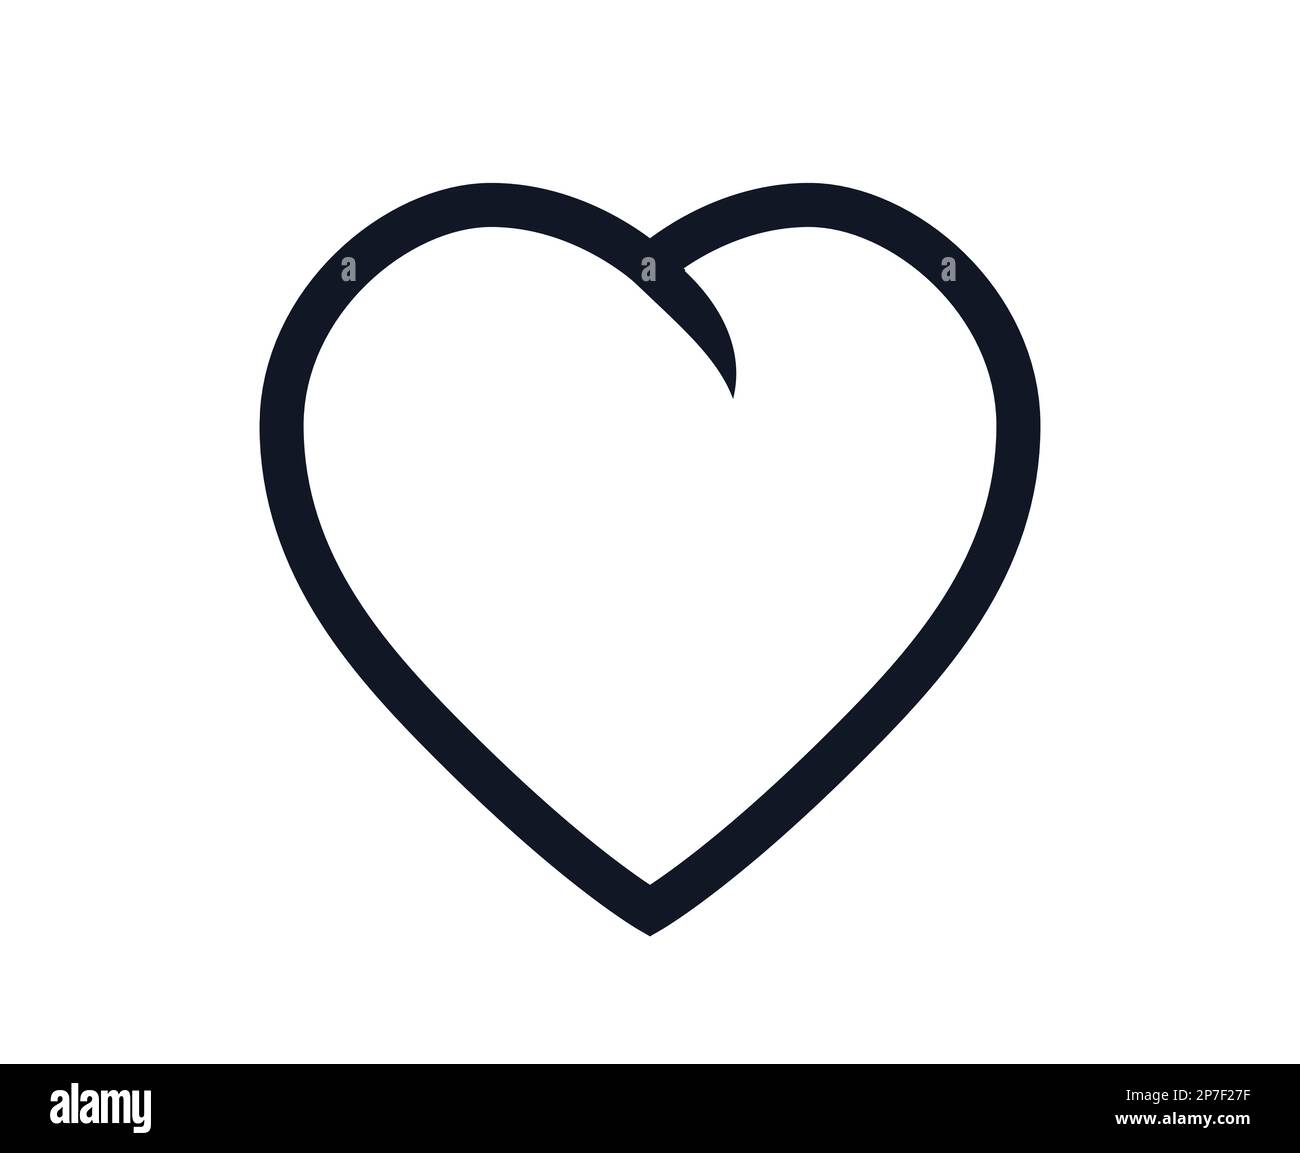 Heart shaped symbol heart vector icon Stock Vector